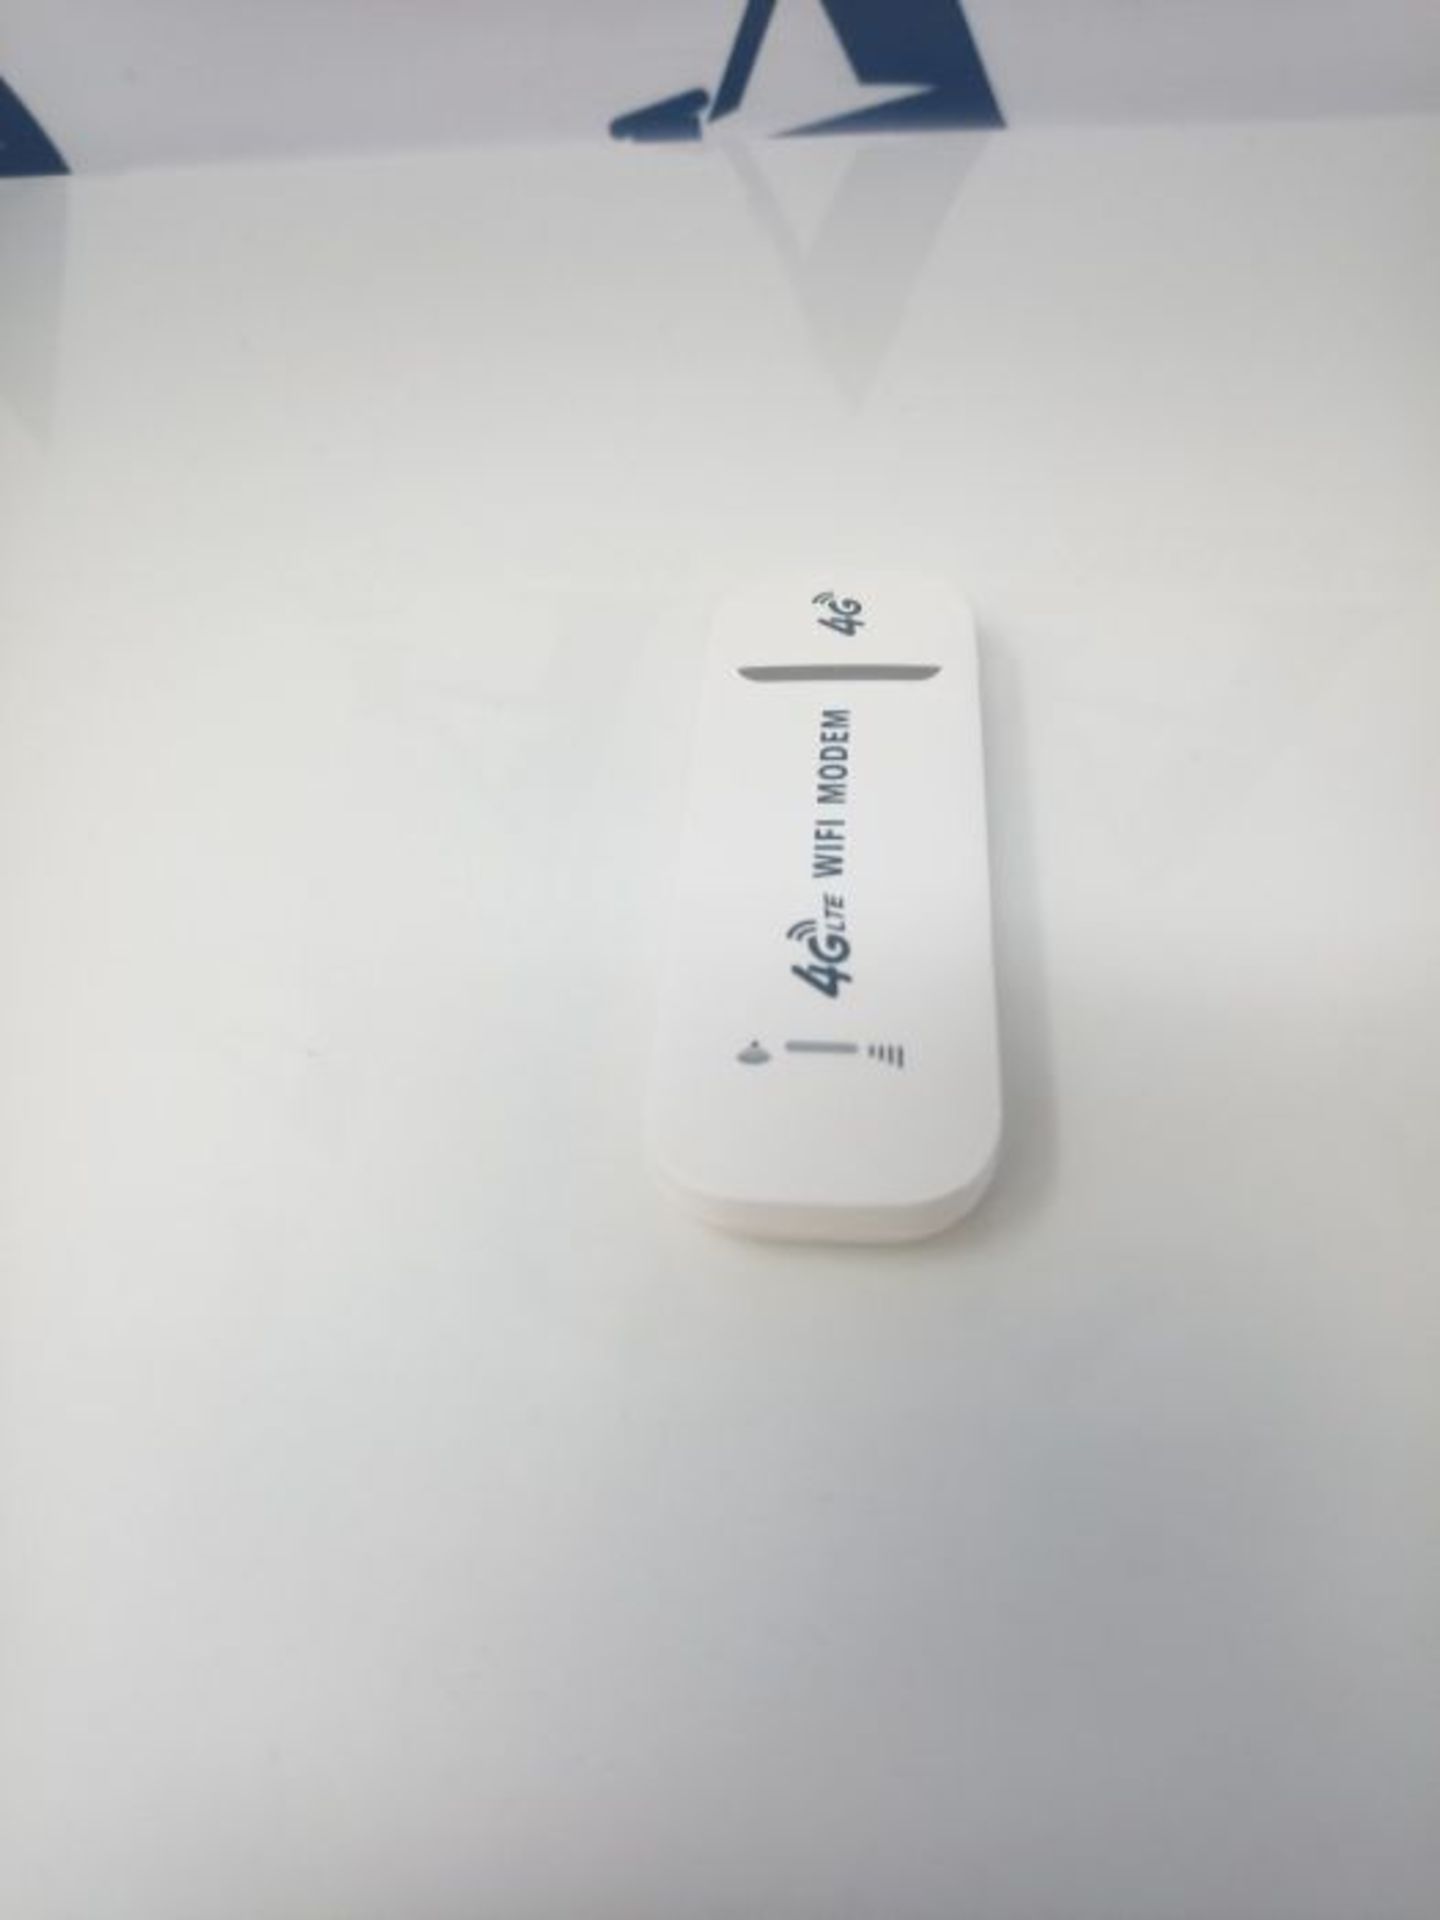 GCDN ClÃ© USB LTE / 4G 150 Mbps avec fente pour carte SIM Hotspot Wi-Fi, Modem USB L - Image 2 of 2